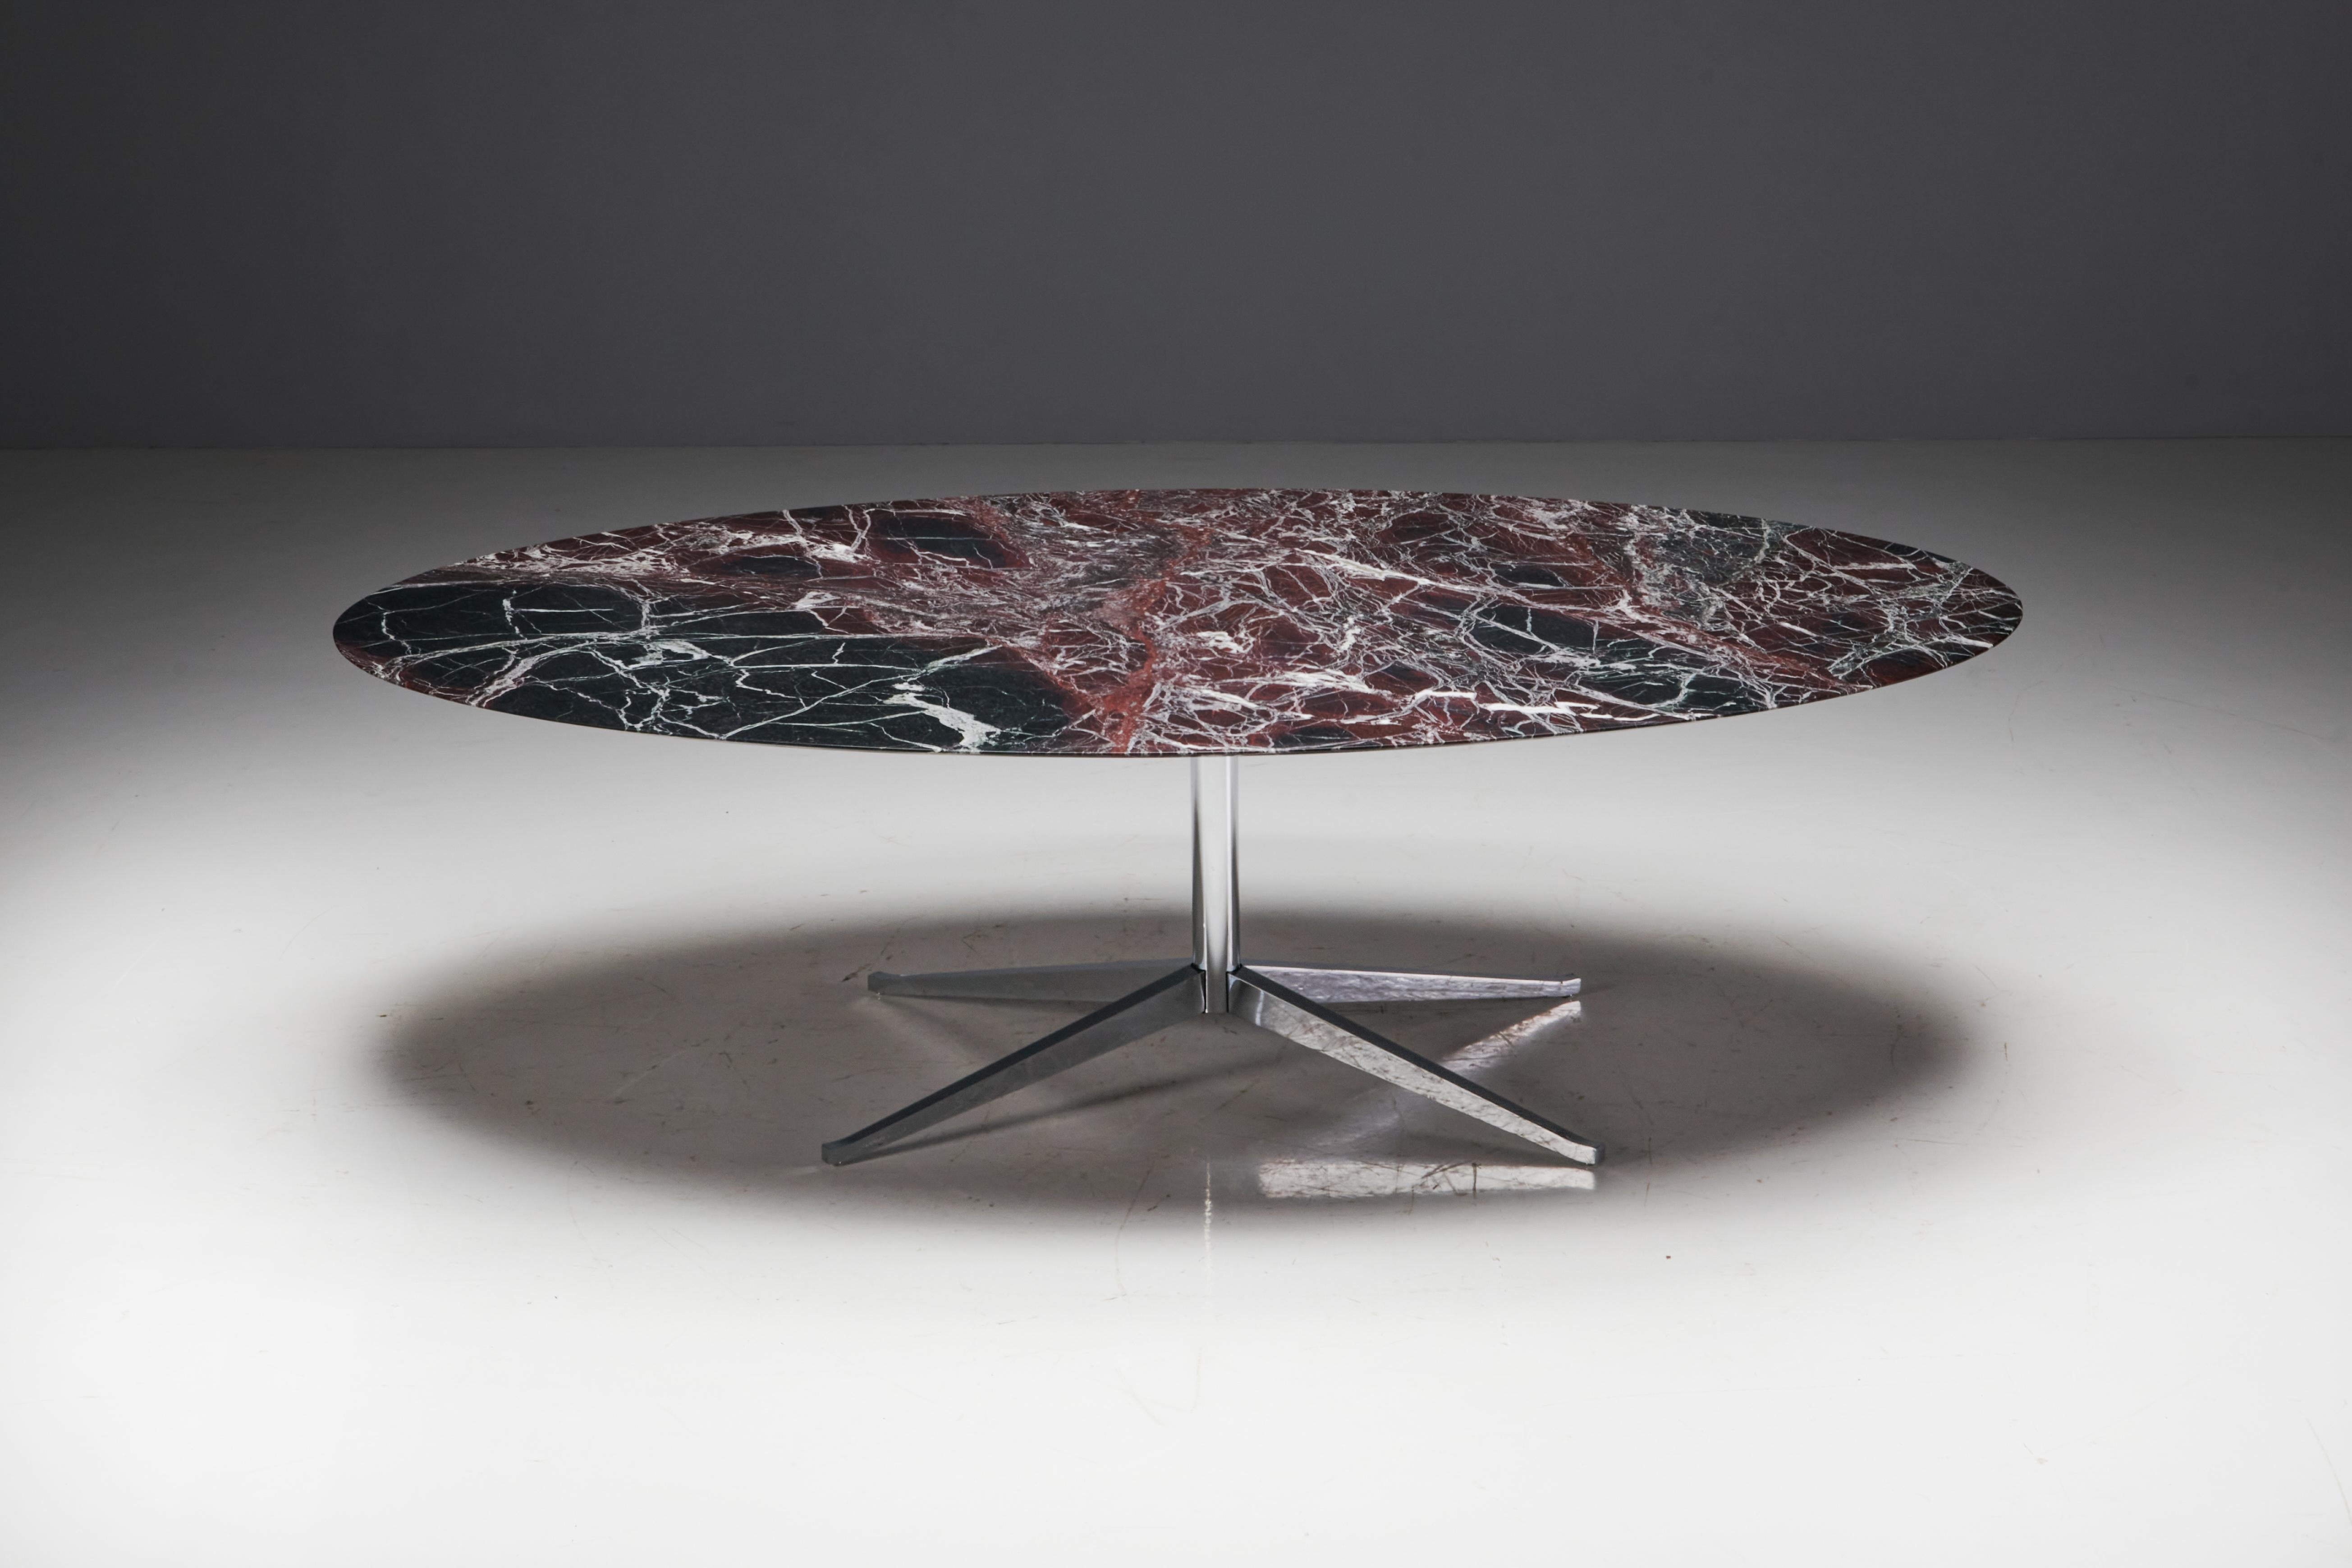 Ovaler Esstisch aus bordeauxfarbenem Marmor von Florence Knoll, hergestellt in den Vereinigten Staaten in den 1960er Jahren. Die Tischplatte aus massivem burgunderrotem Marmor ruht auf einem Stahlsockel, der von vier gespreizten Beinen getragen